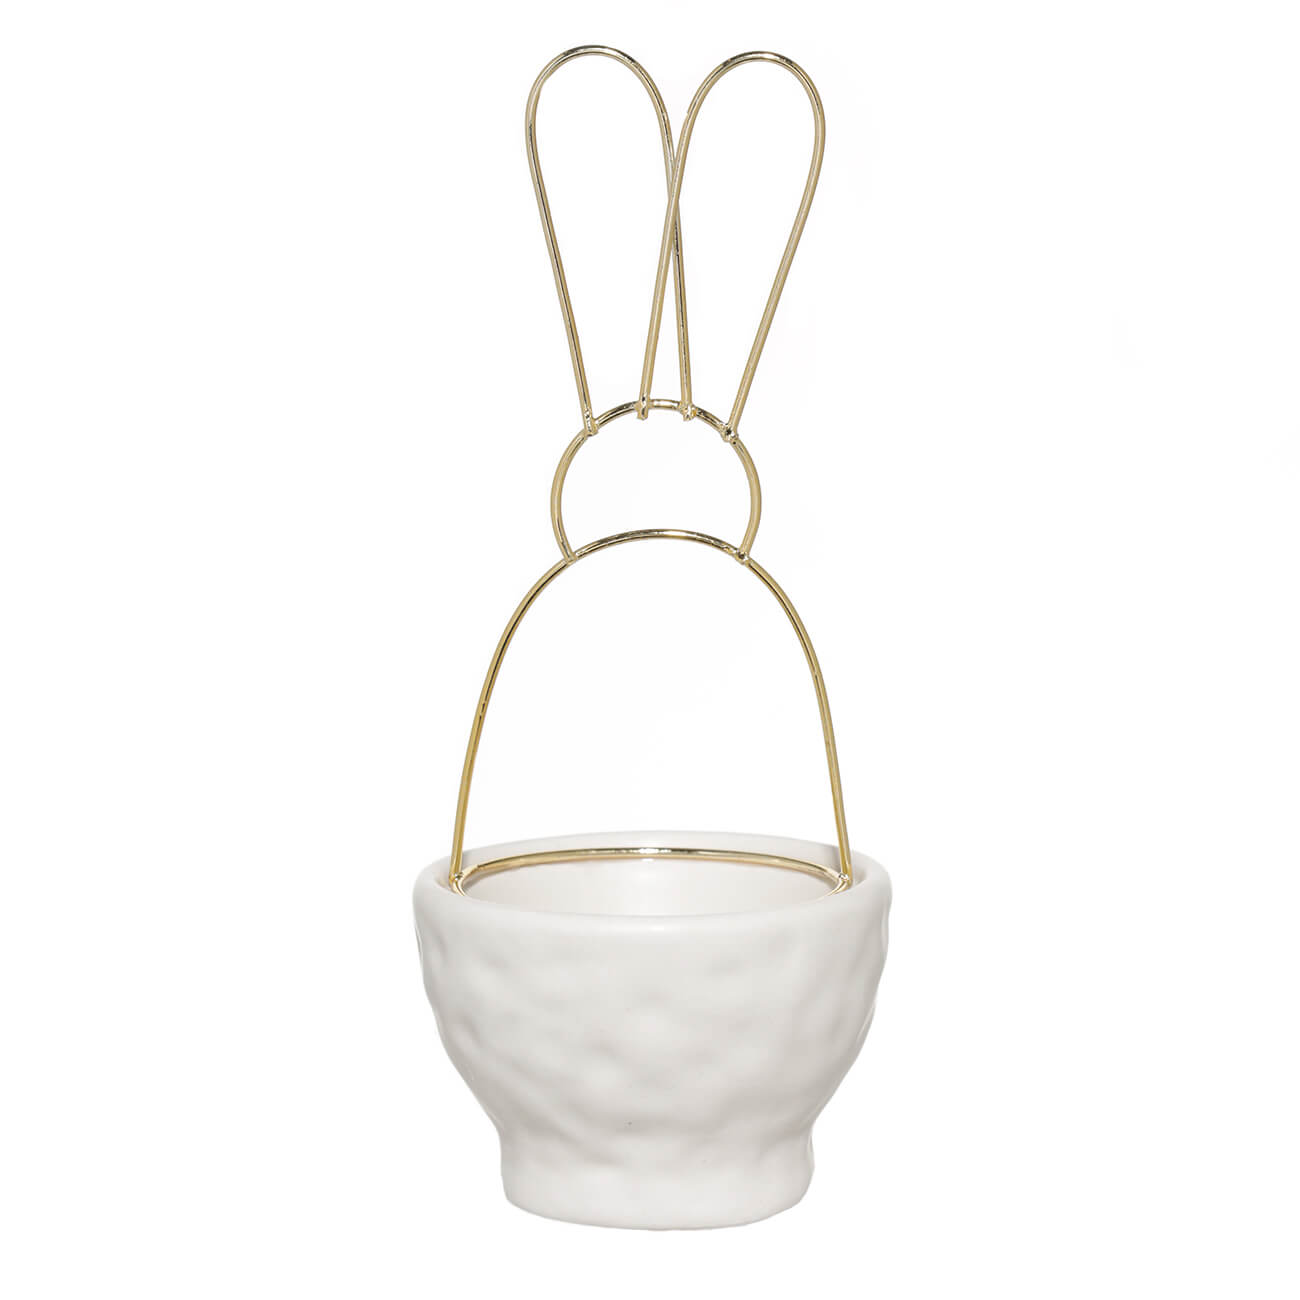 Подставка для яйца, 13х5 см, с ручкой, керамика/металл, бежевая, Уши кролика, Easter gold - фото 1